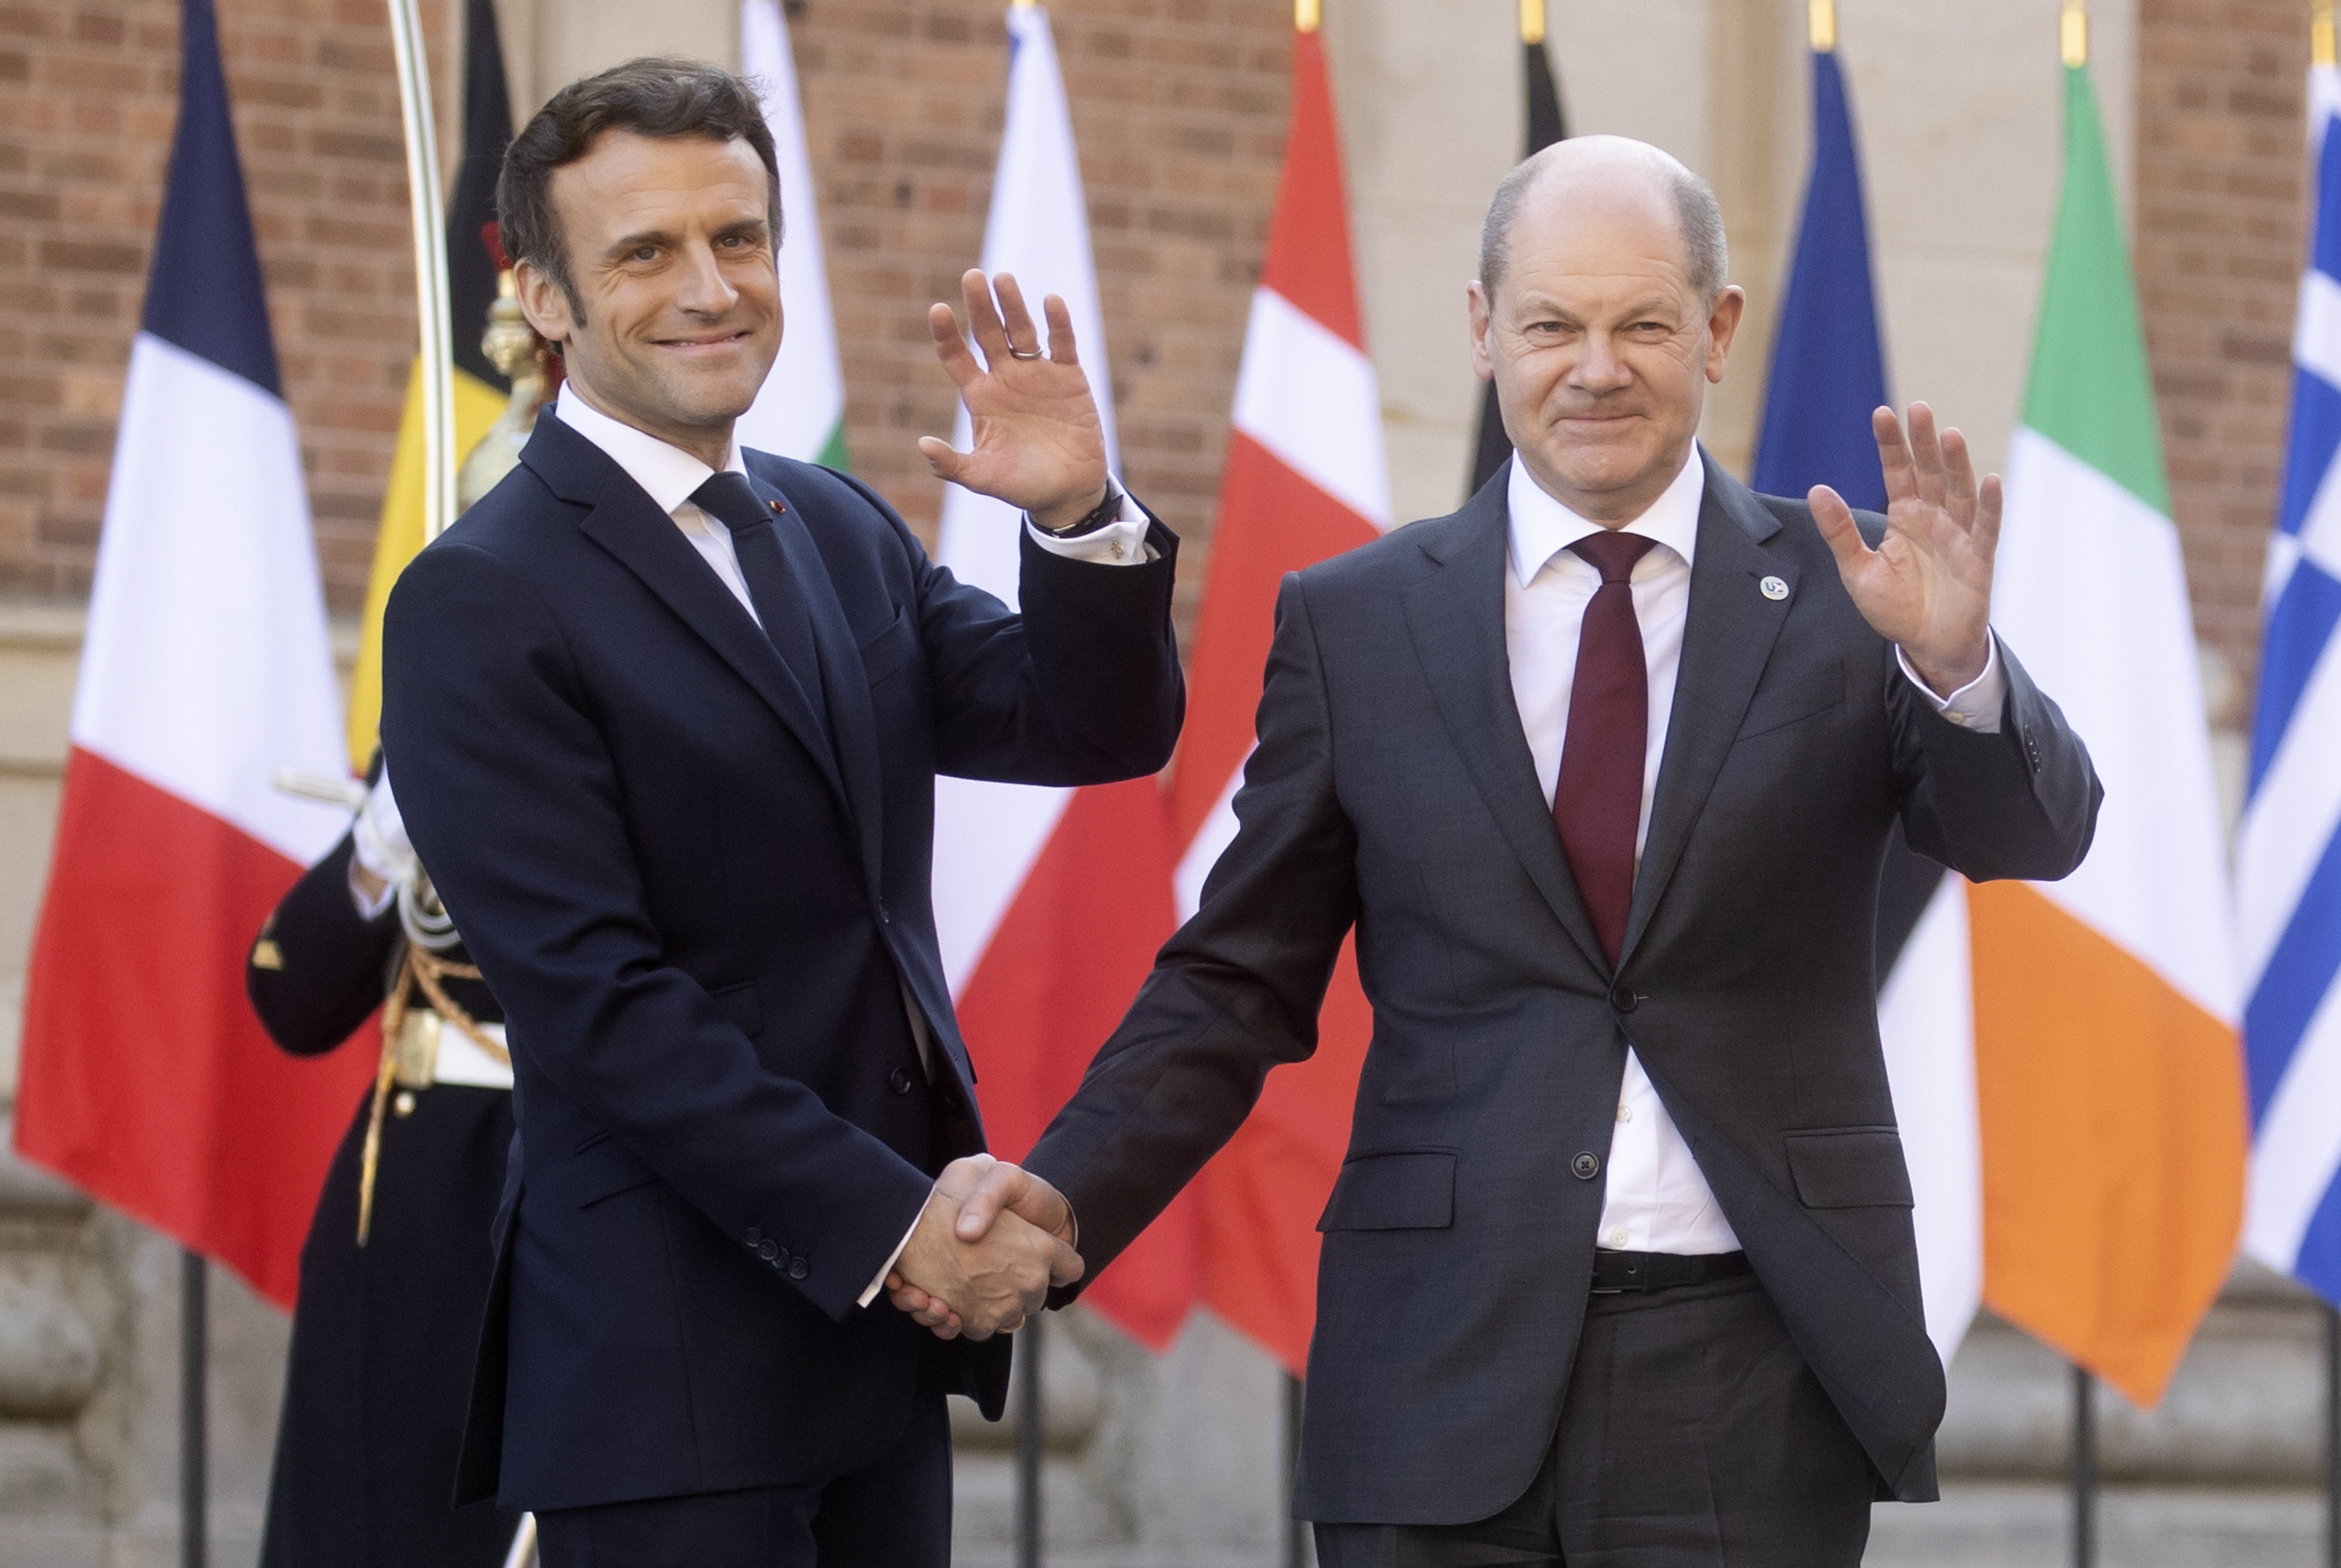 Sigue sin haber entendimiento entre Francia y Alemania después del encuentro en París